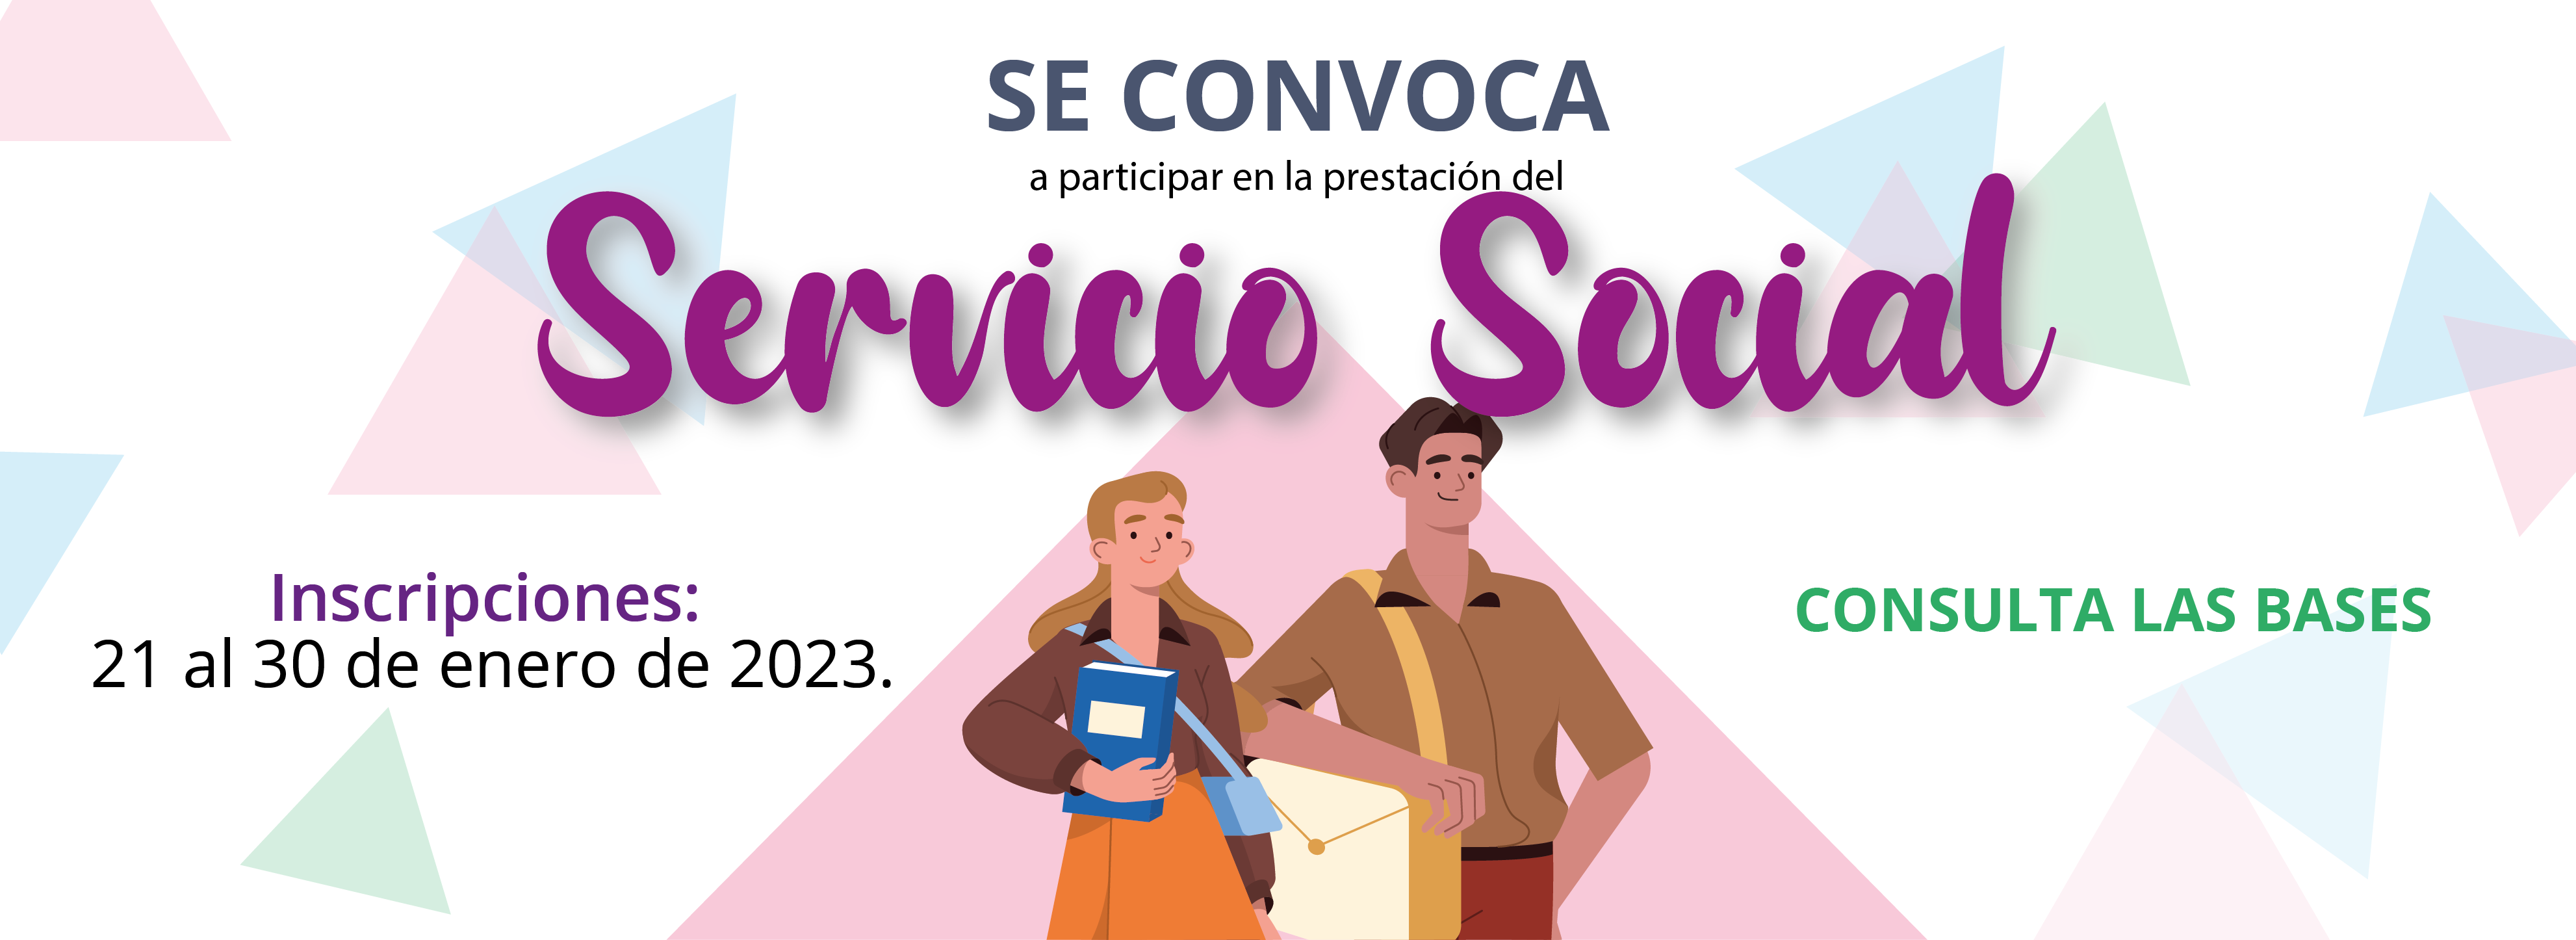 convocatoria_Servicio_Social_enero_2023_banner_web